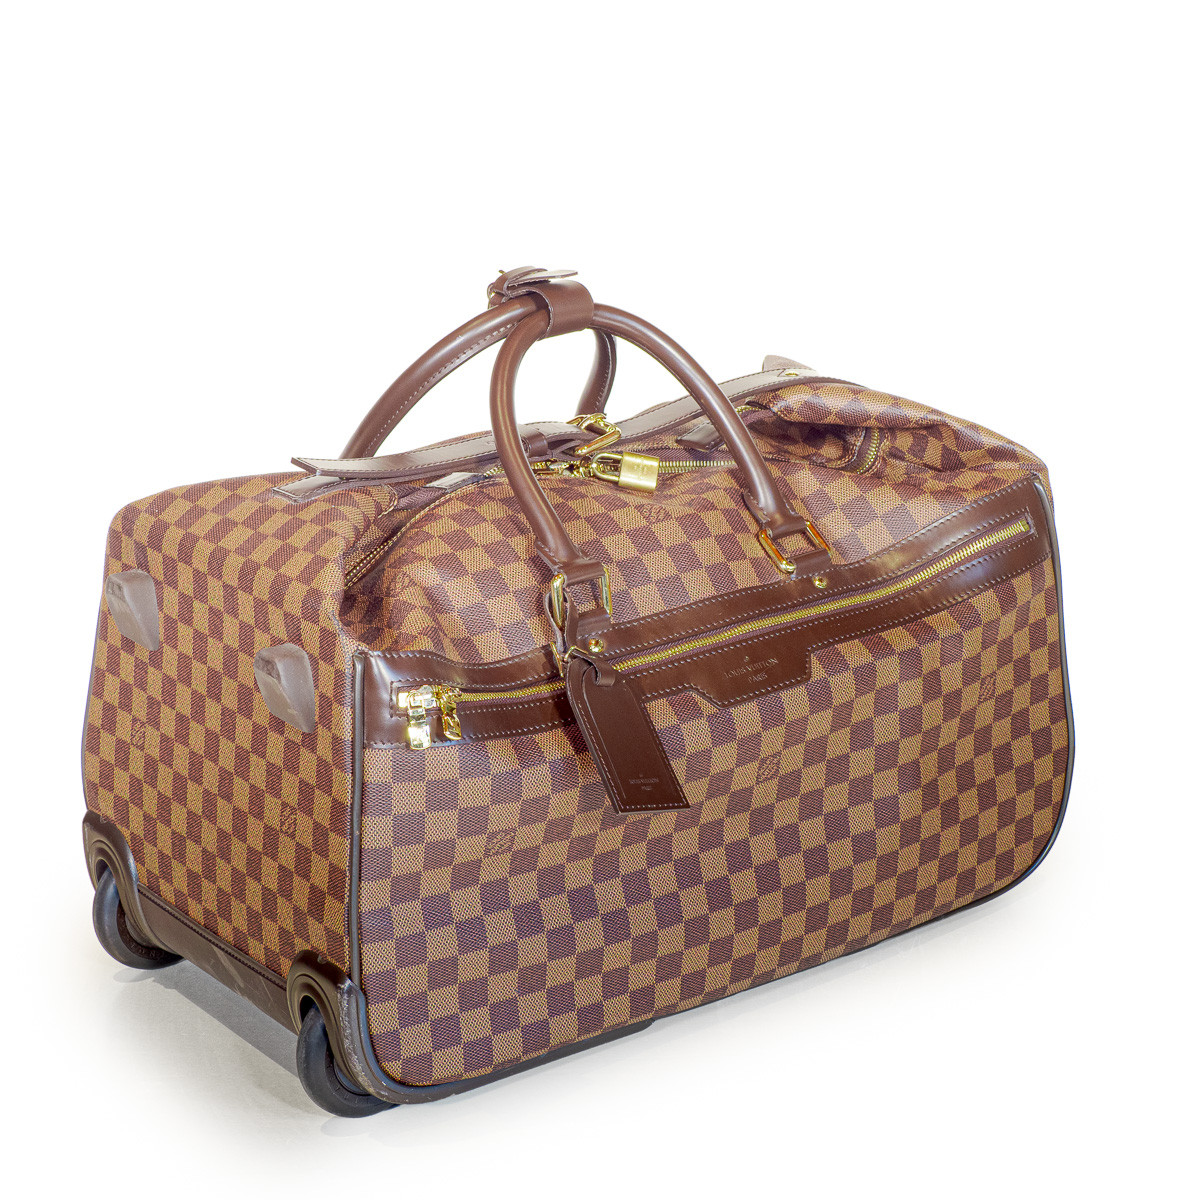 Louis Vuitton second-hand Eole 50 Damier canvas travel bag.